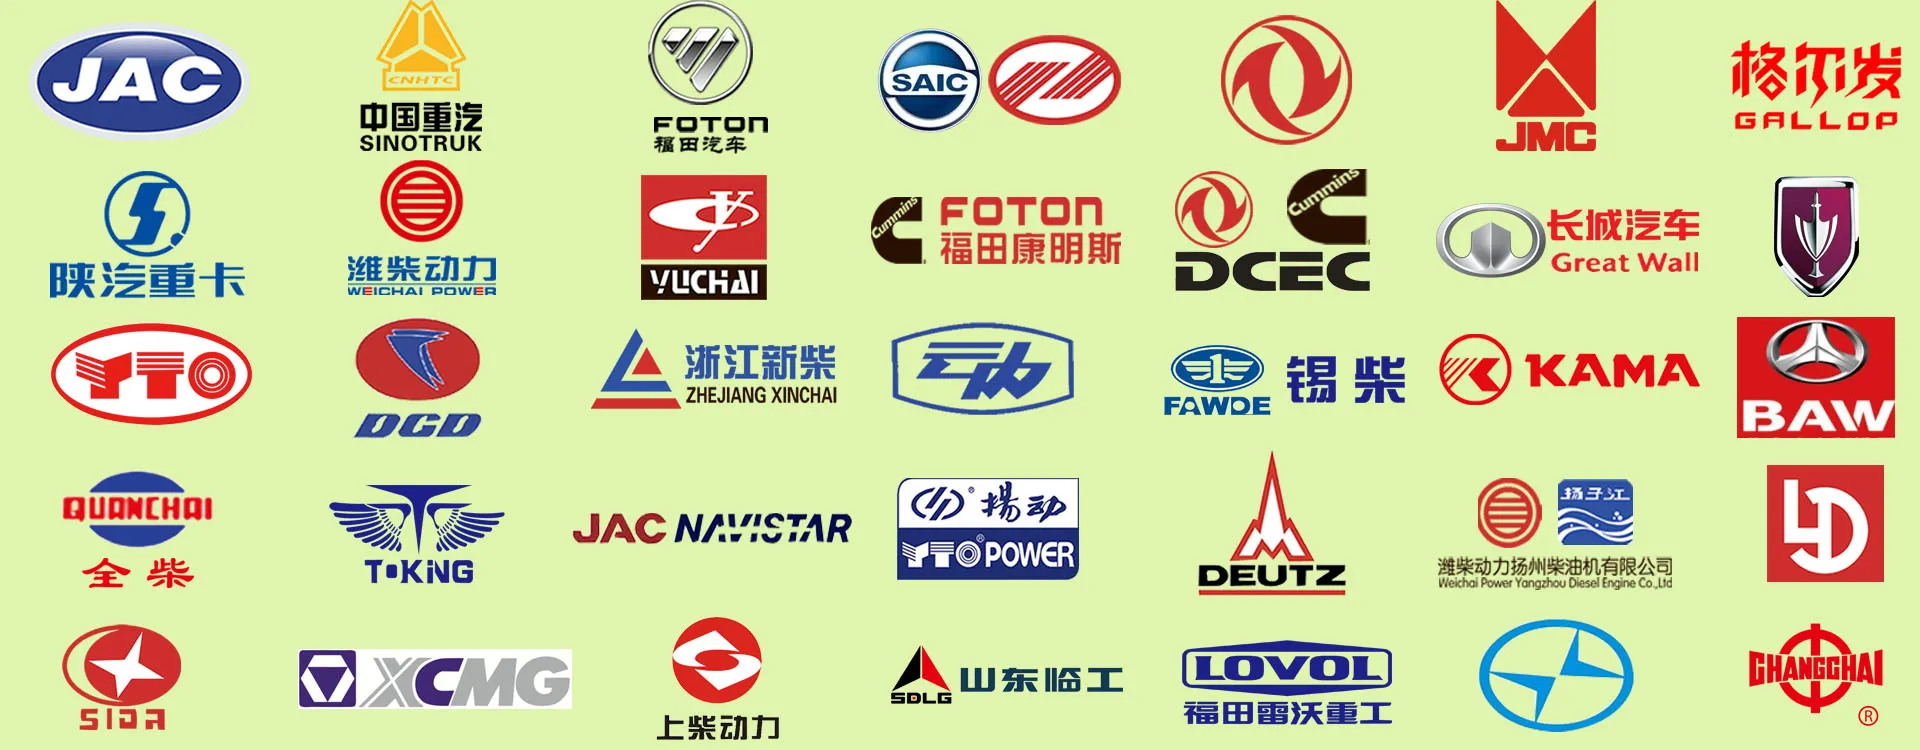 Repuestos para camiones fabricados en China